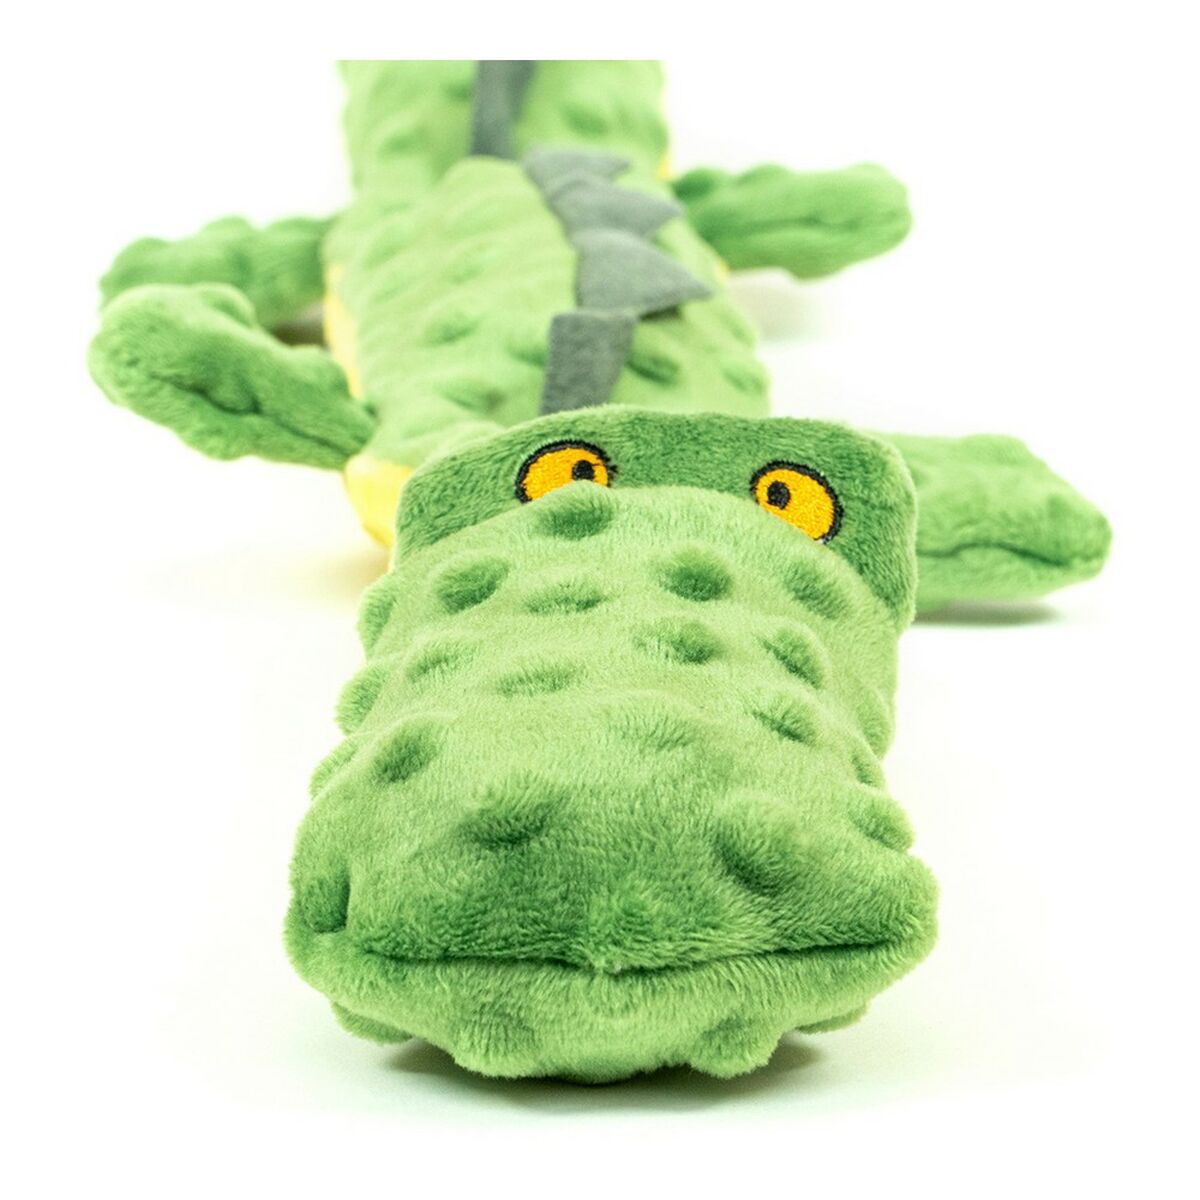 Hundespielzeug Gloria Dogmonsters 65 x 5 x 6 cm grün Krokodil